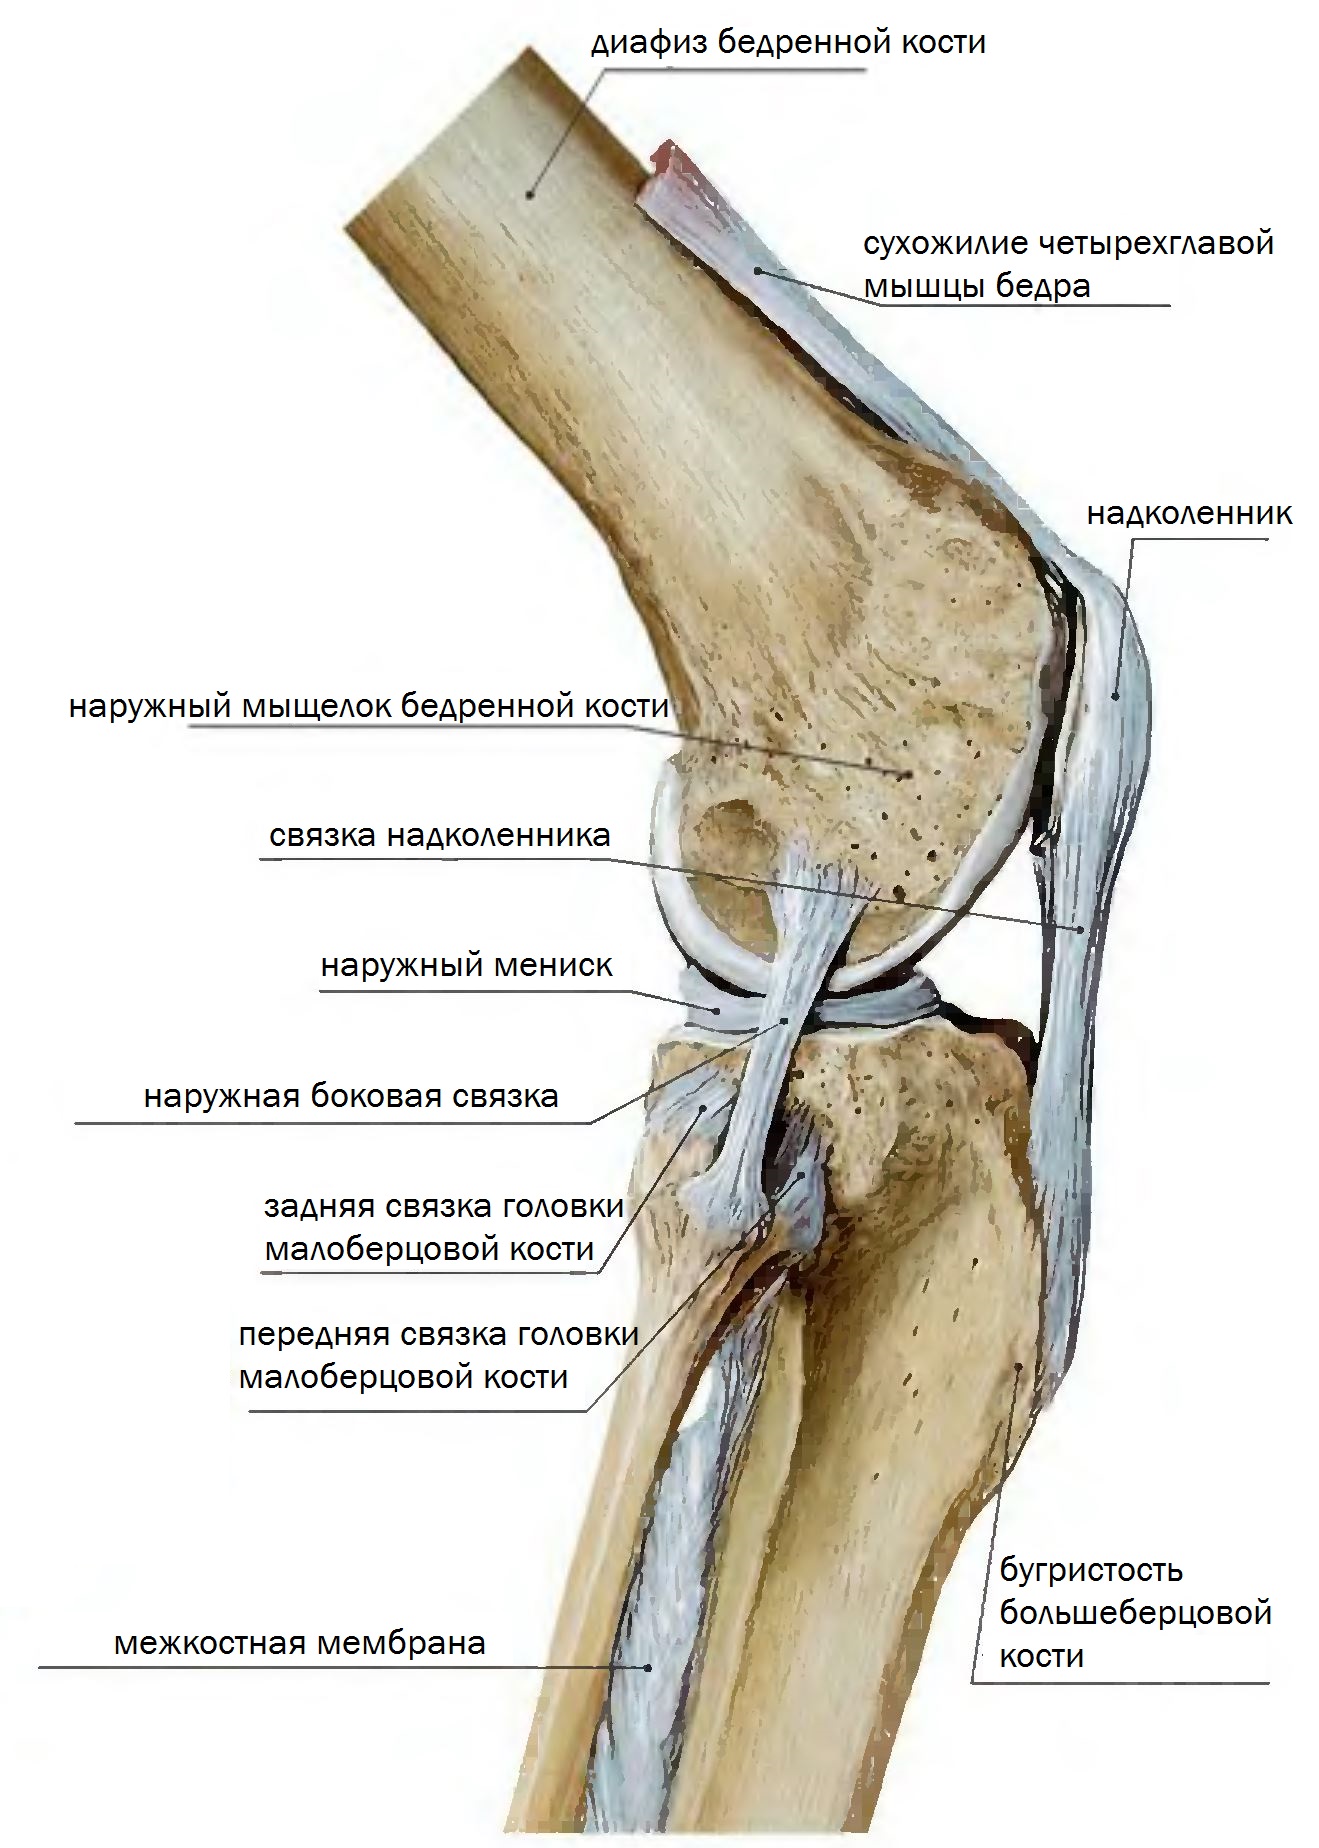 Латеральный мыщелок бедренной. Мыщелок коленного сустава большеберцовой кости. Коленный сустав анатомия связки надколенника. Коленный сустав малоберцовая кость. Передняя связка головки малоберцовой кости.